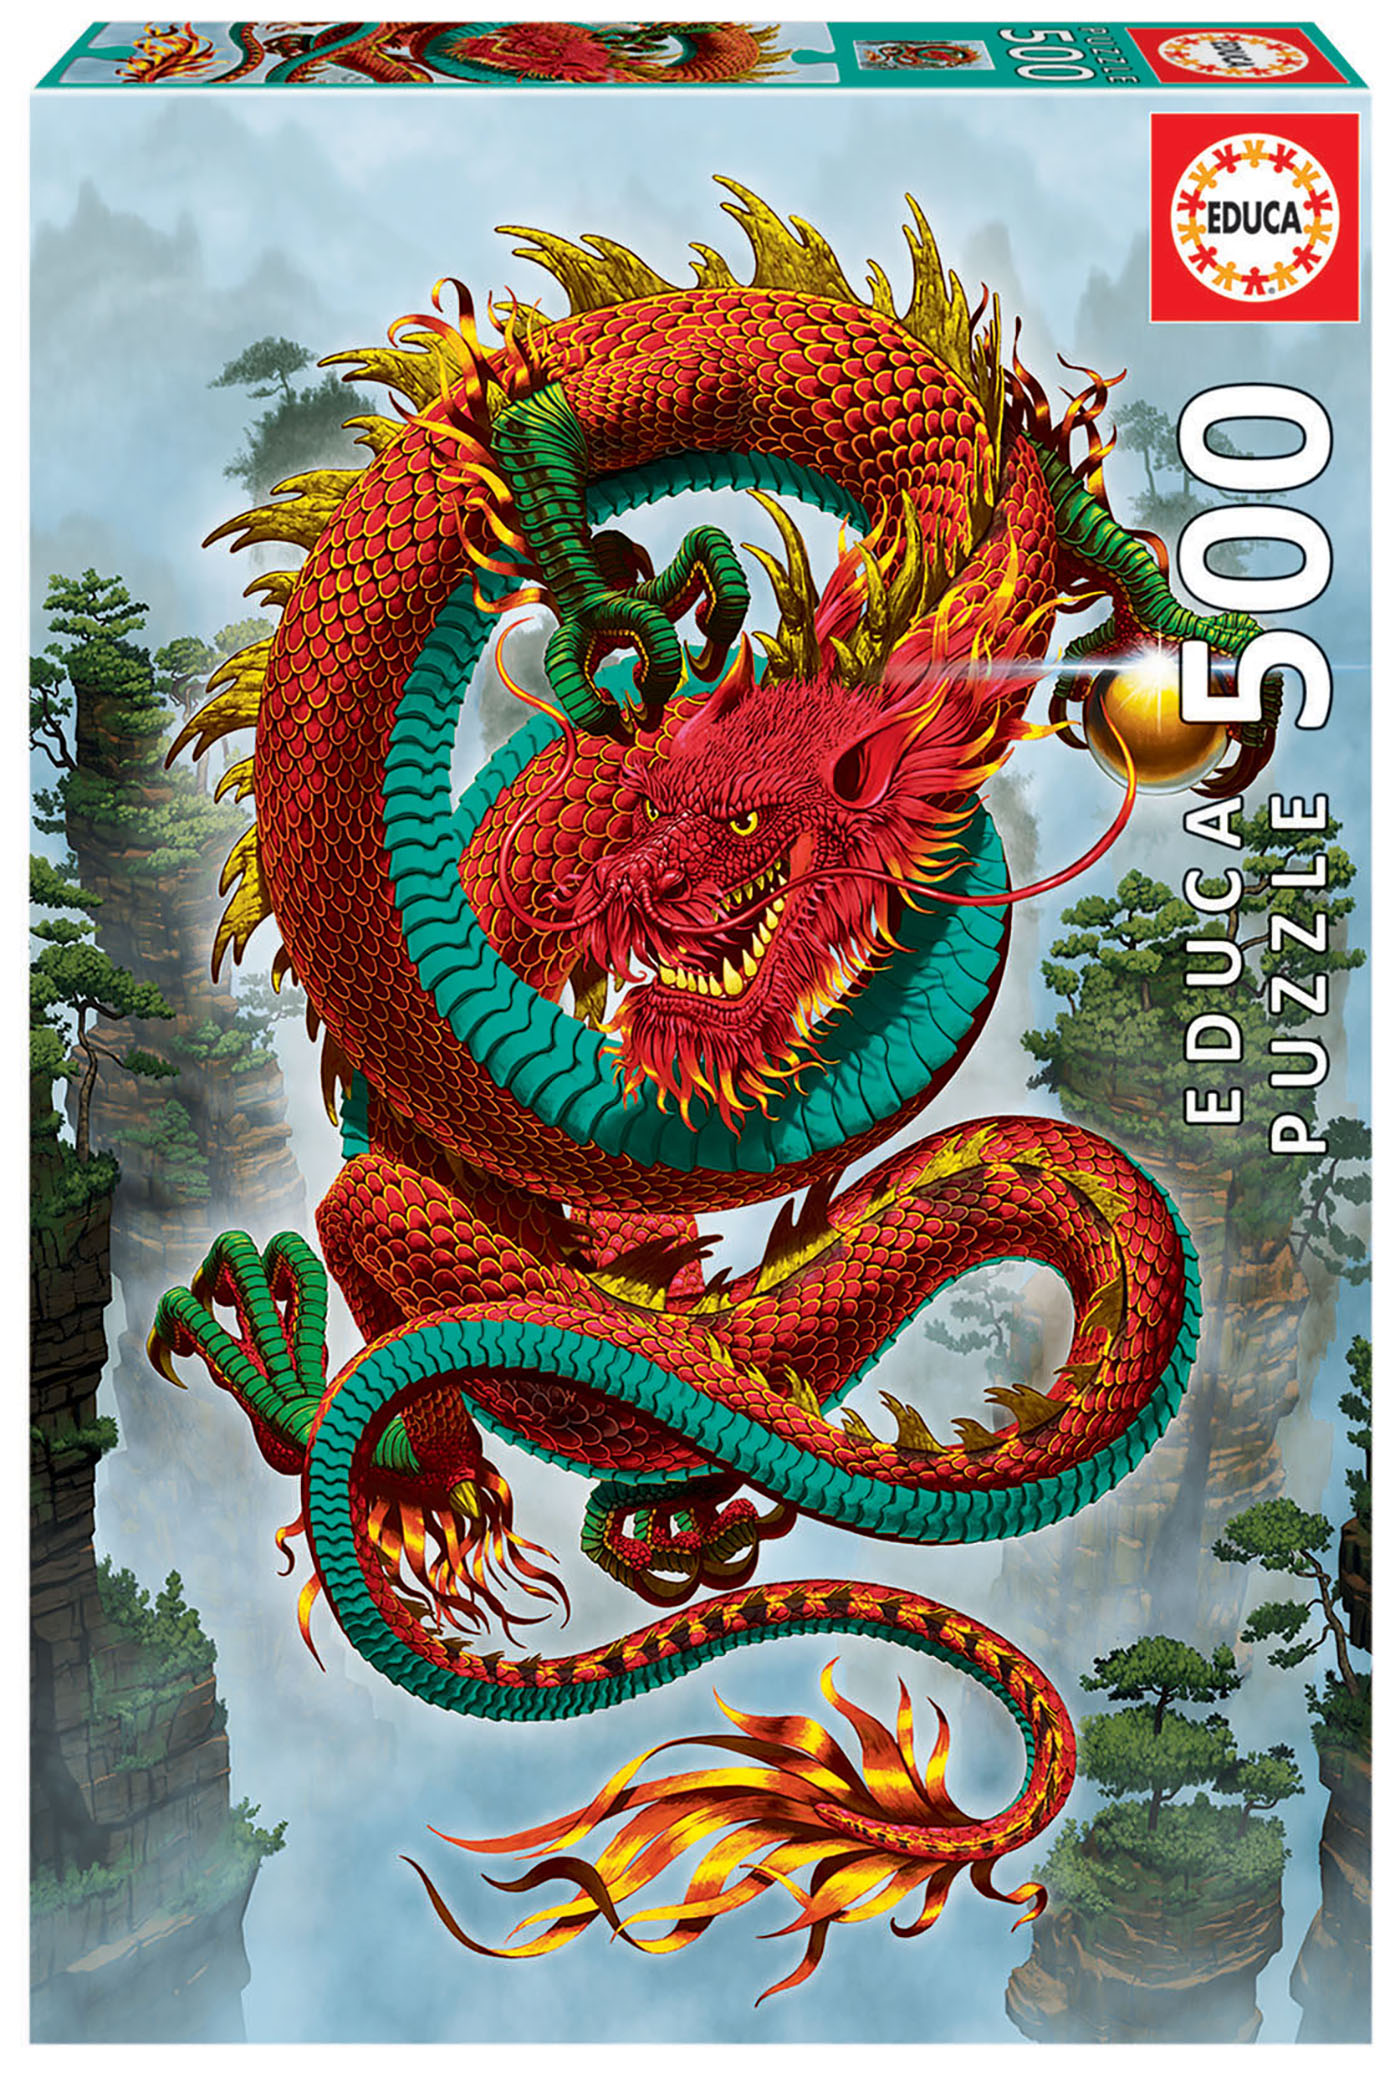 500 Le Dragon de la bonne fortune, Vincent Hie